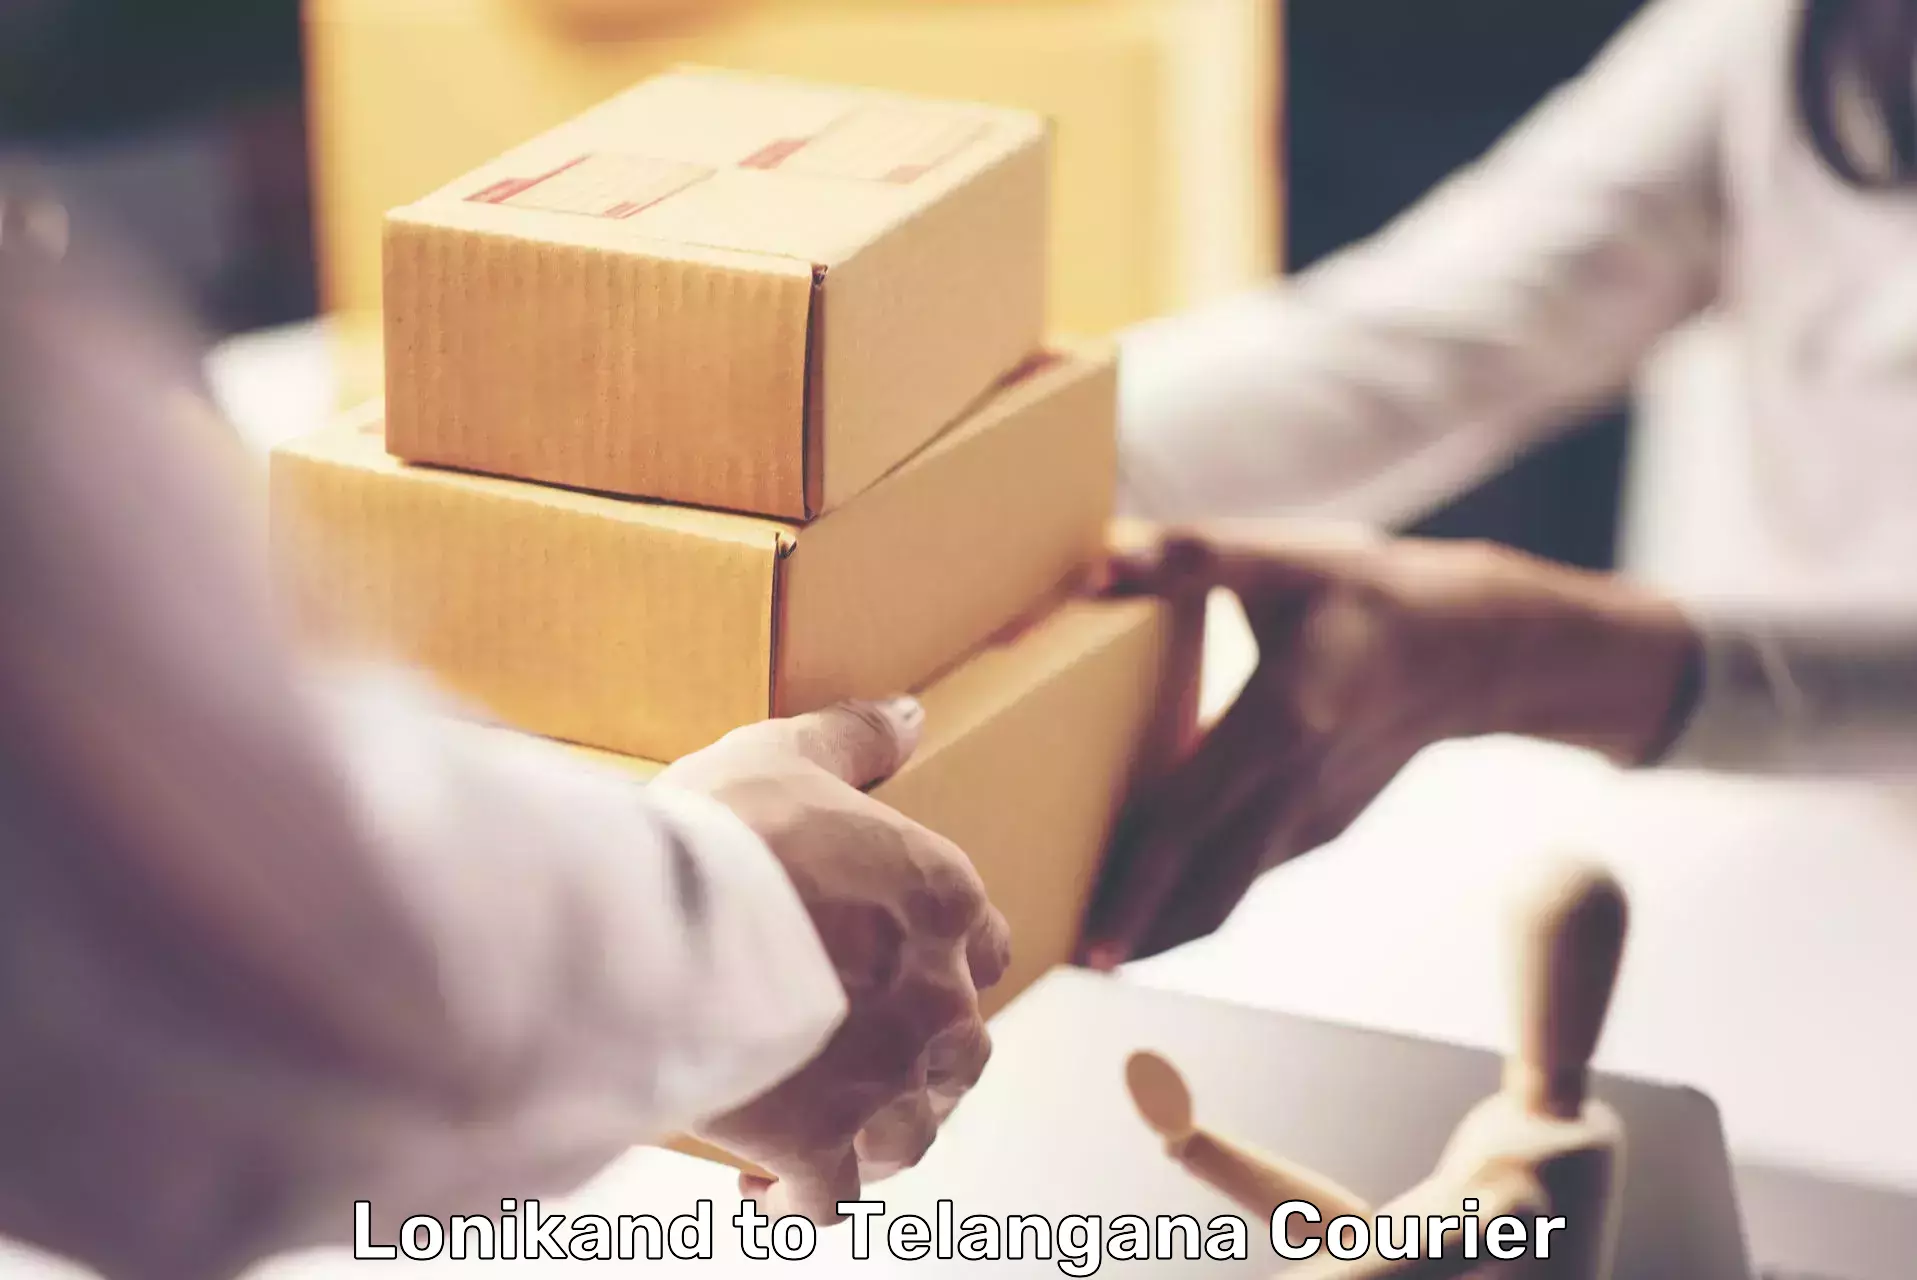 High-capacity parcel service Lonikand to Bommalaramaram